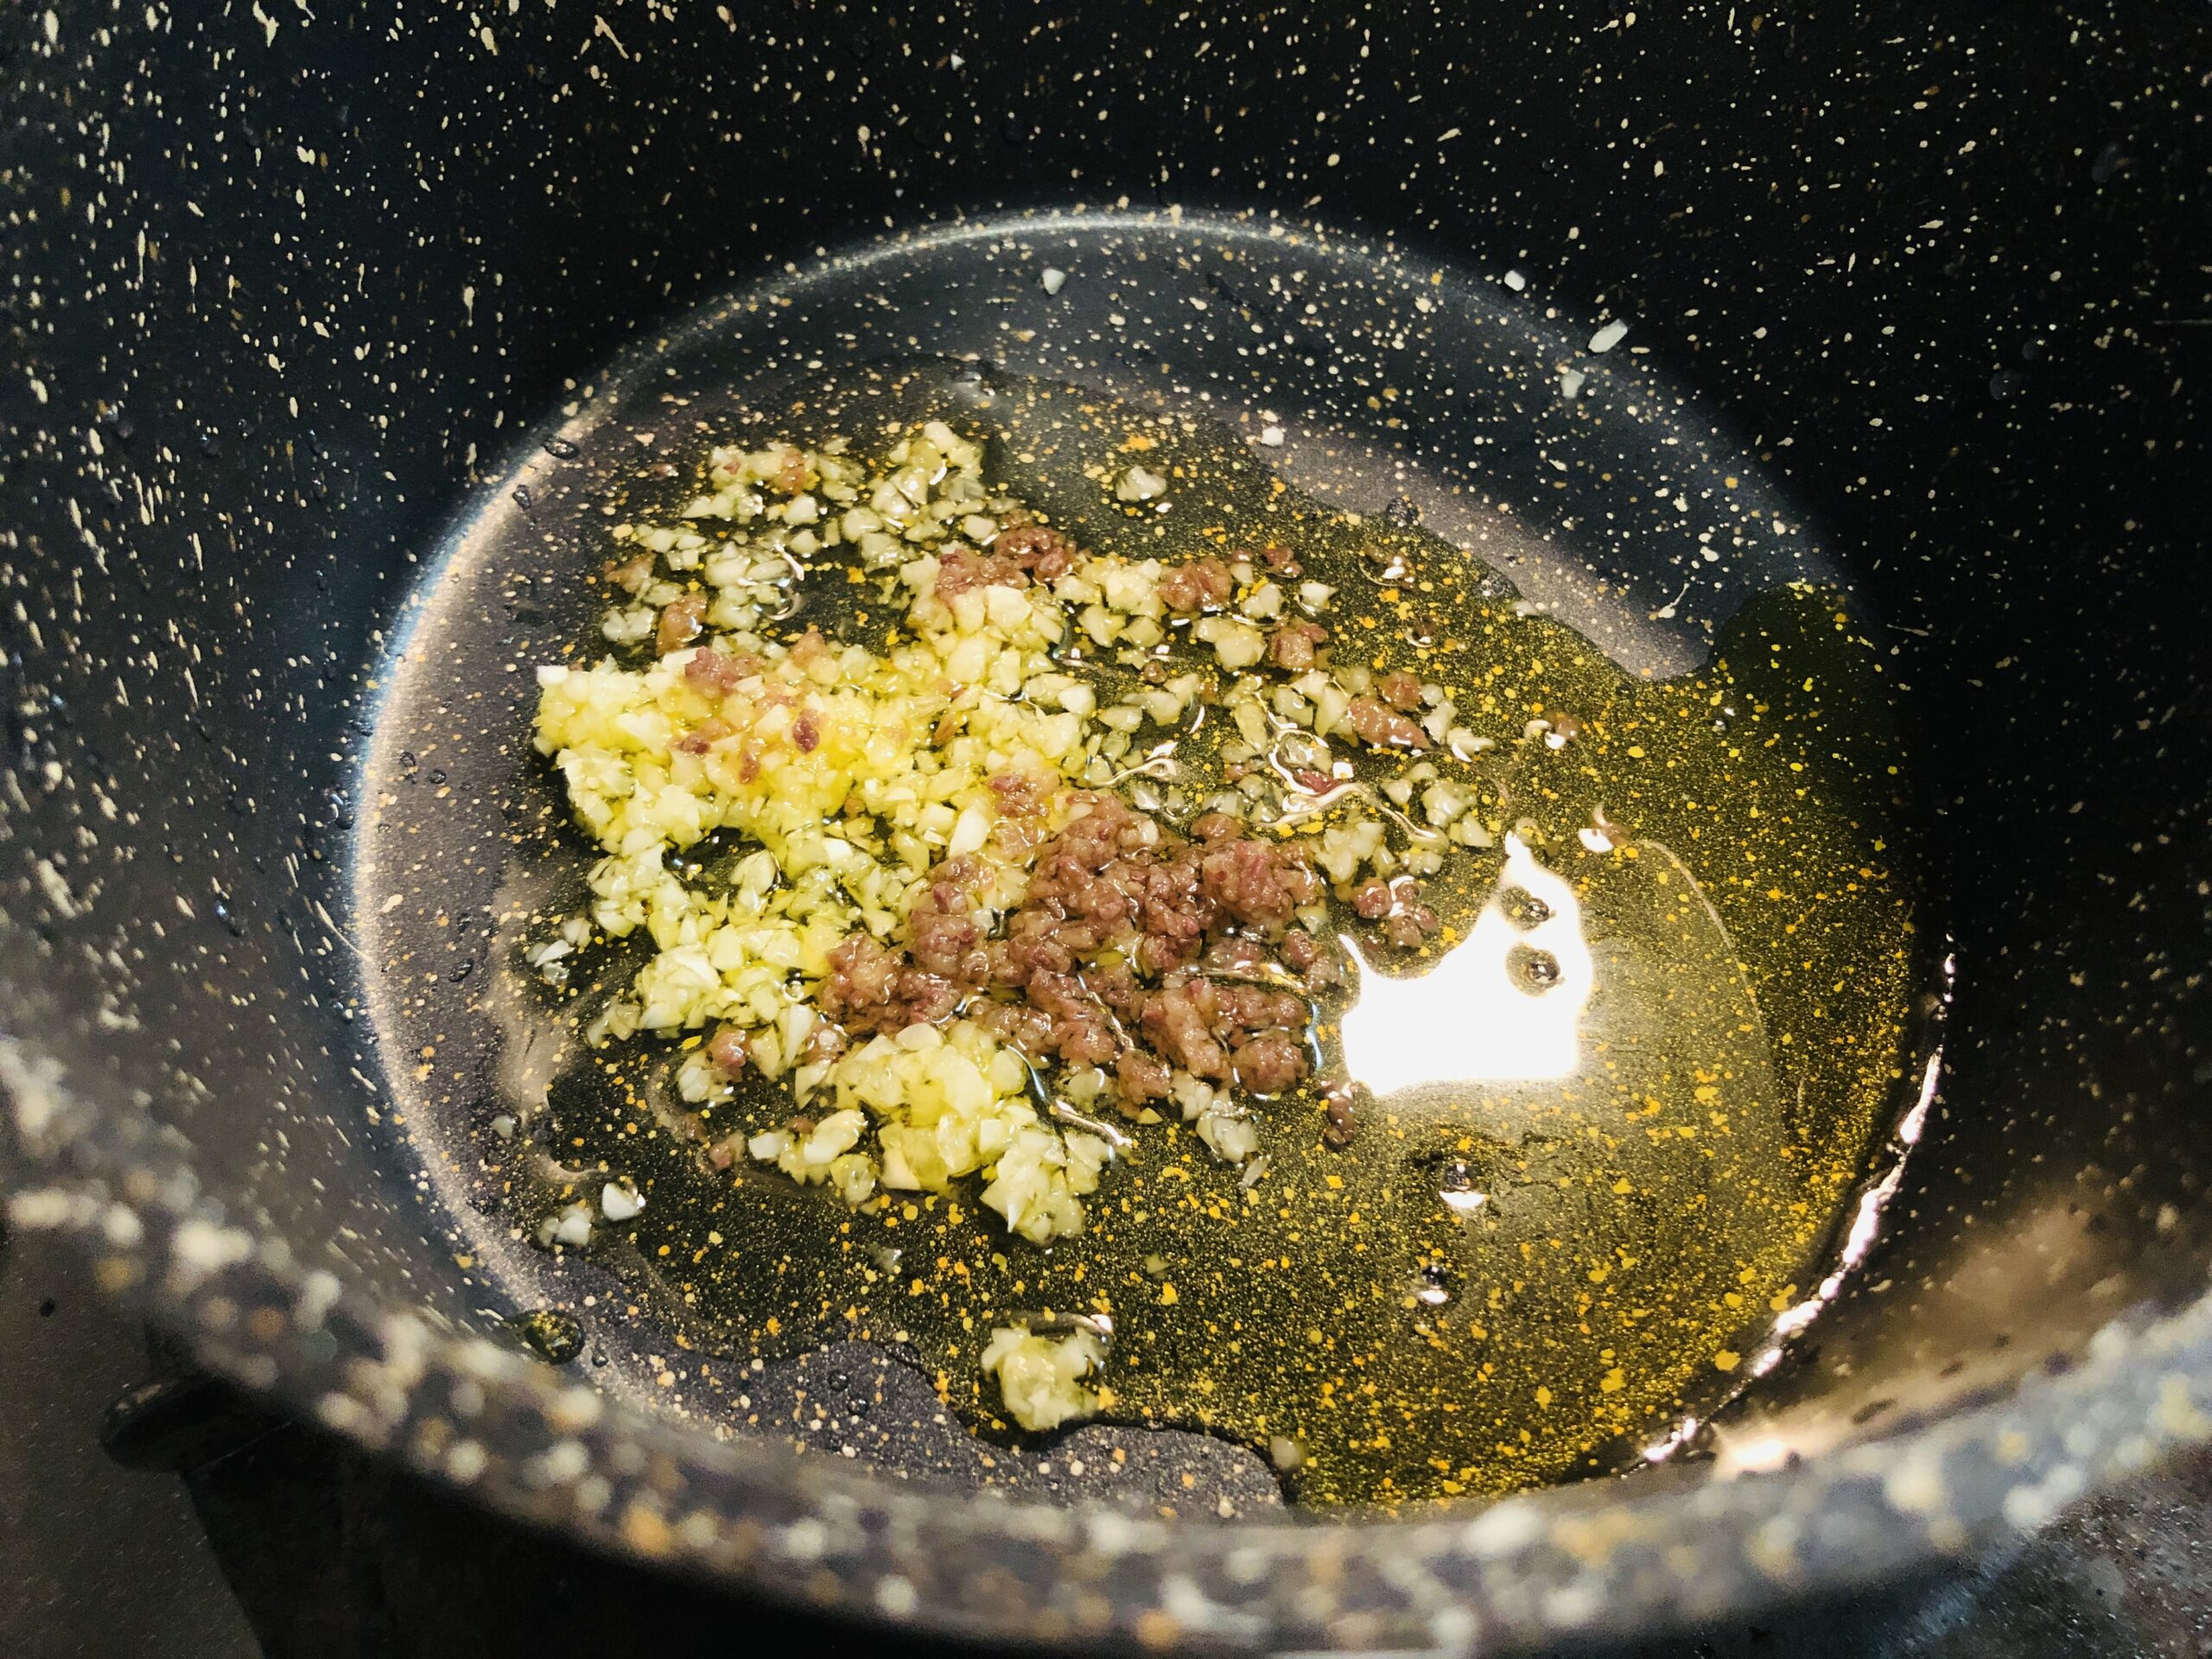 小鍋にオリーブオイル、ニンニクとアンチョビのみじん切りを入れた状態の画像です